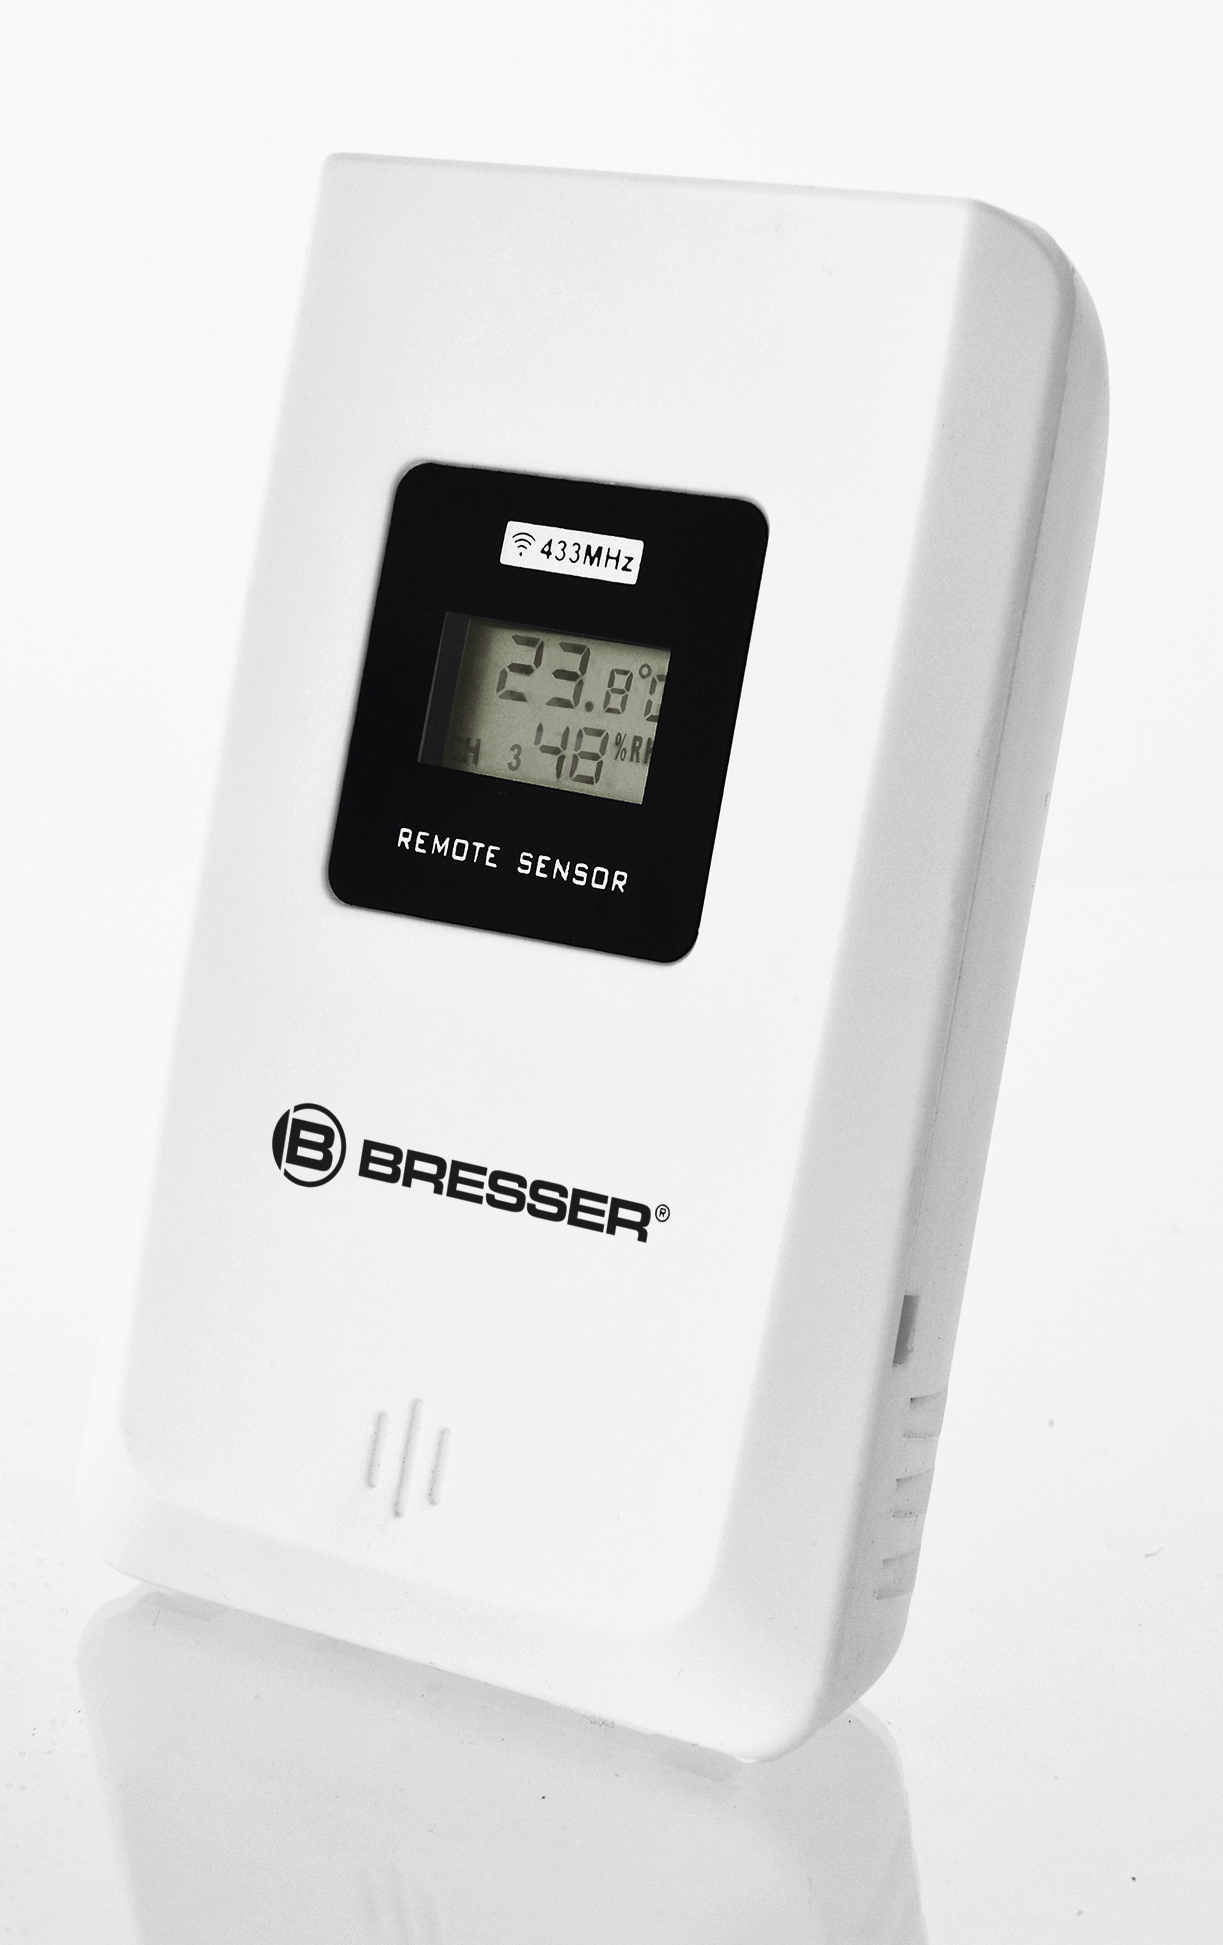 BRESSER Sensore senza fili per termoigrometro 3CH - per termoigrometri BRESSER